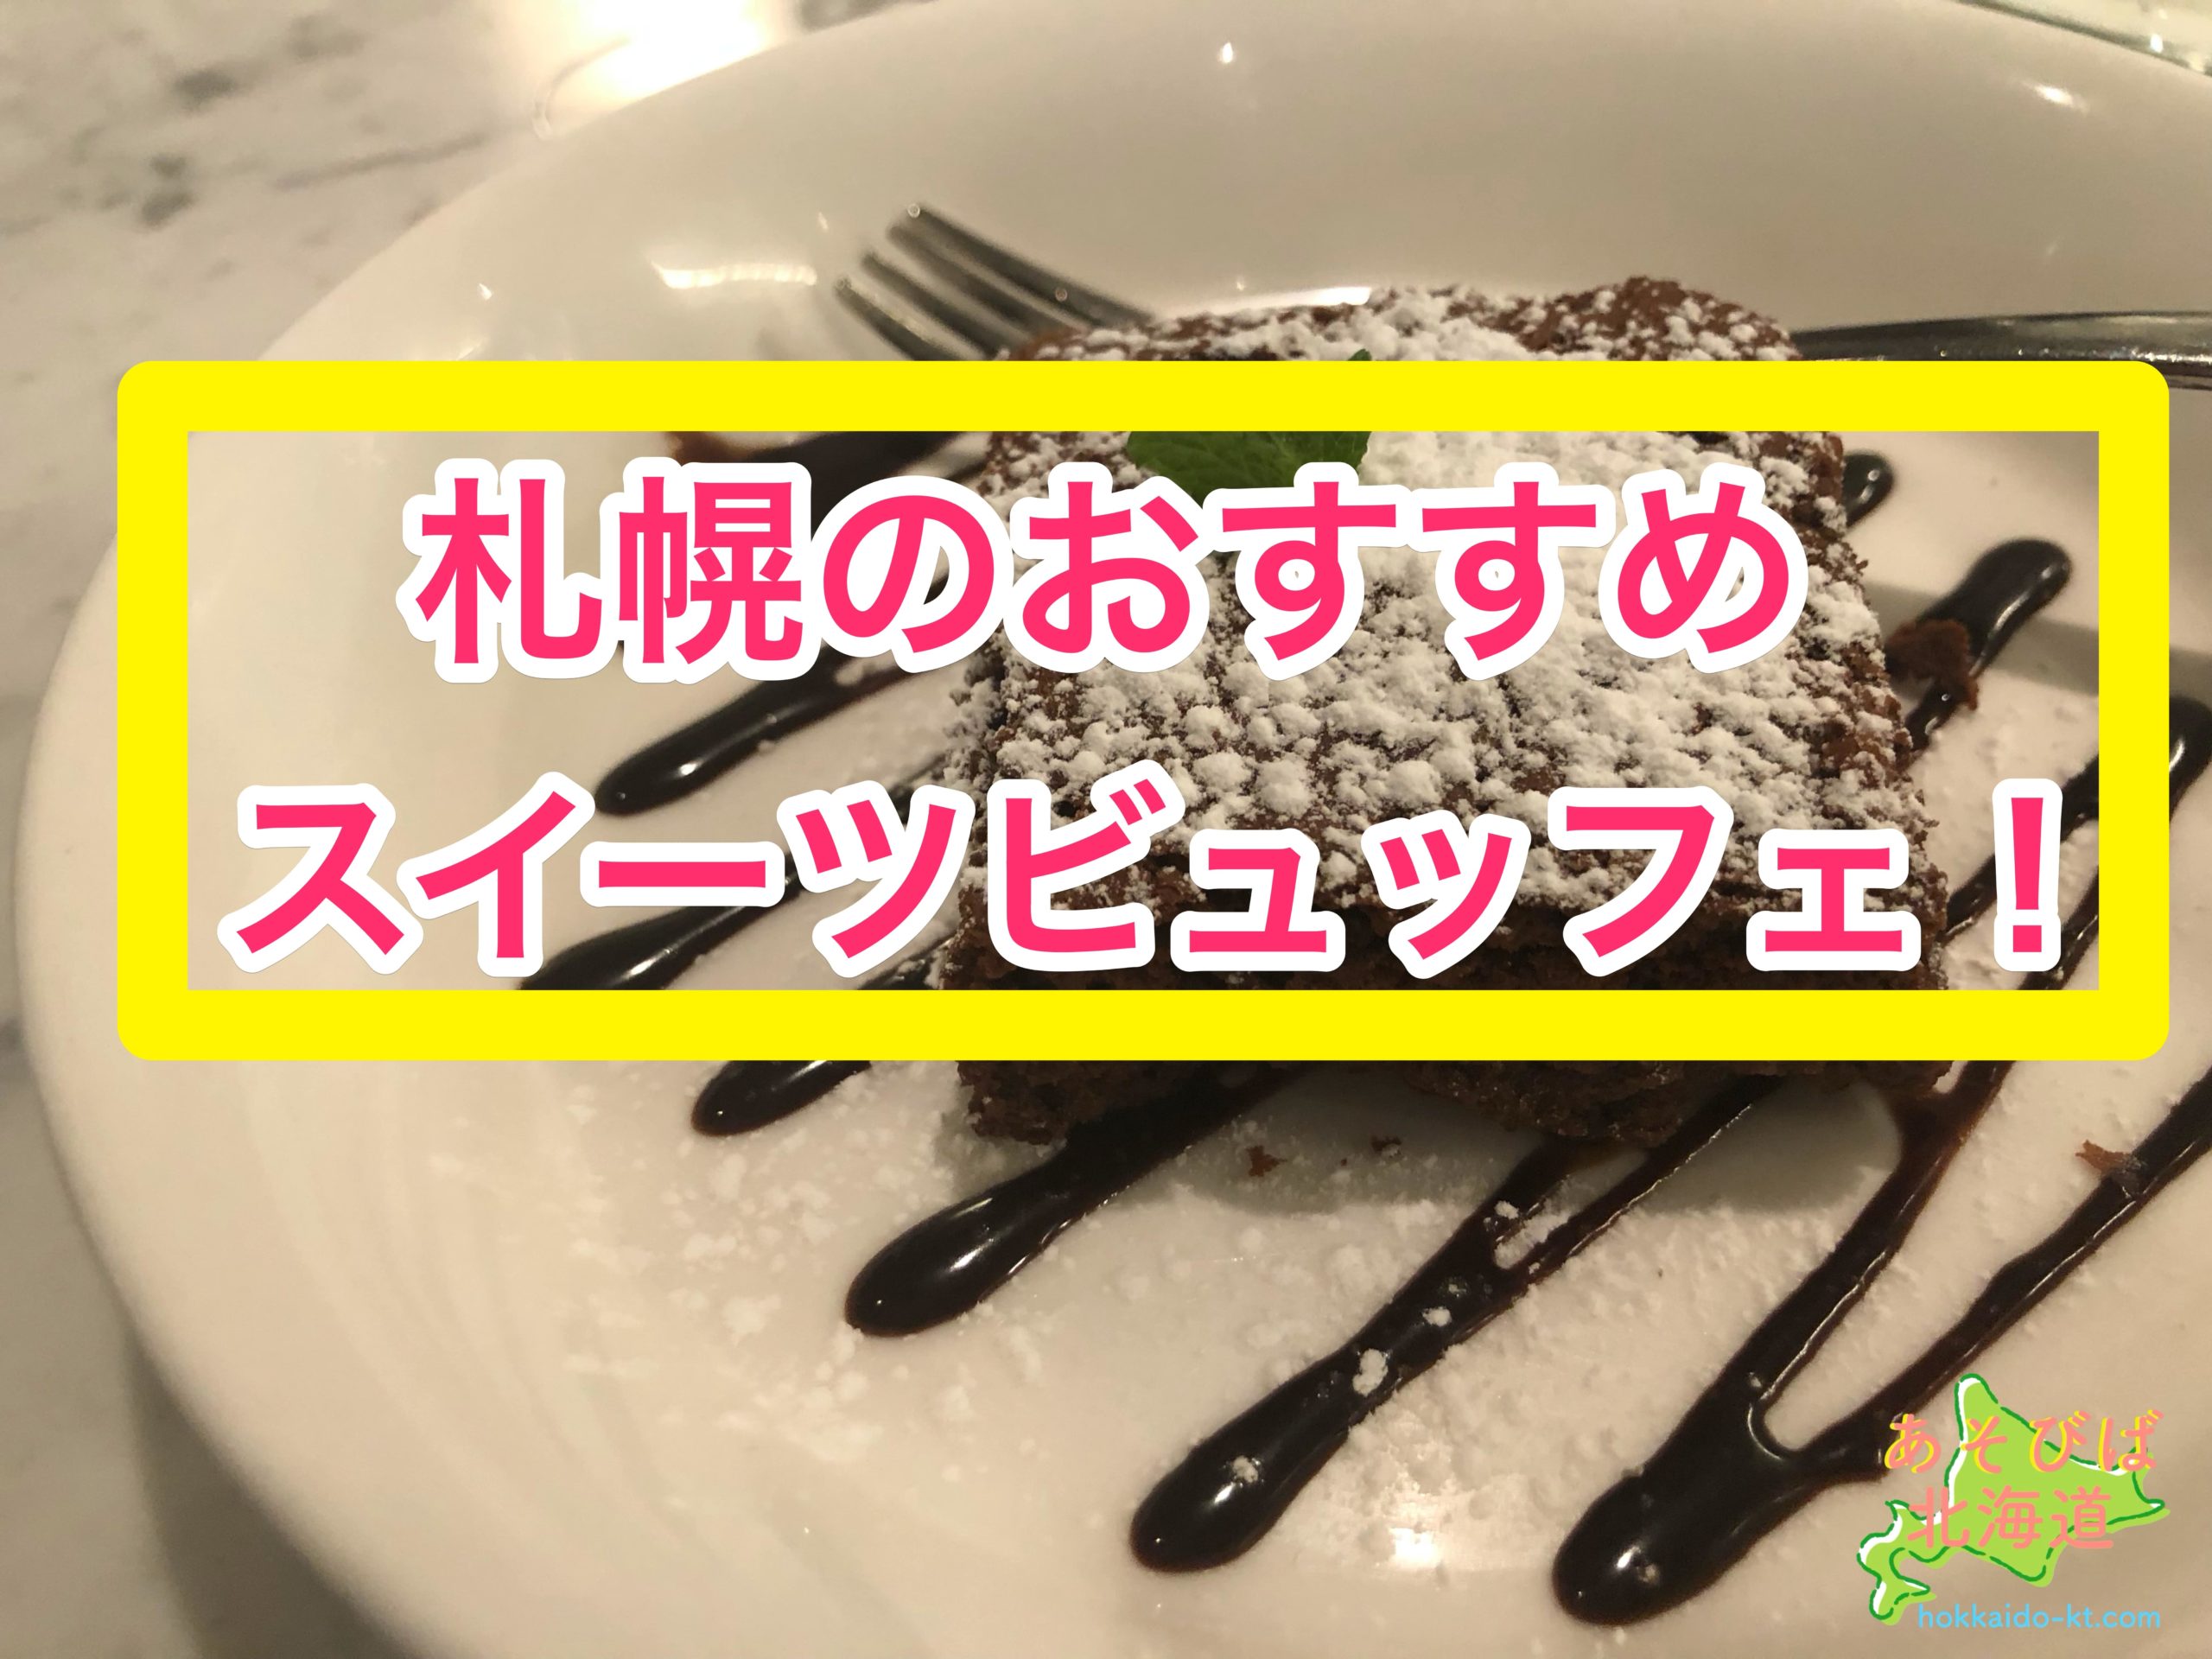 札幌のケーキバイキング スイーツビュッフェ食べ放題のおすすめを紹介 安いのは あそびば北海道